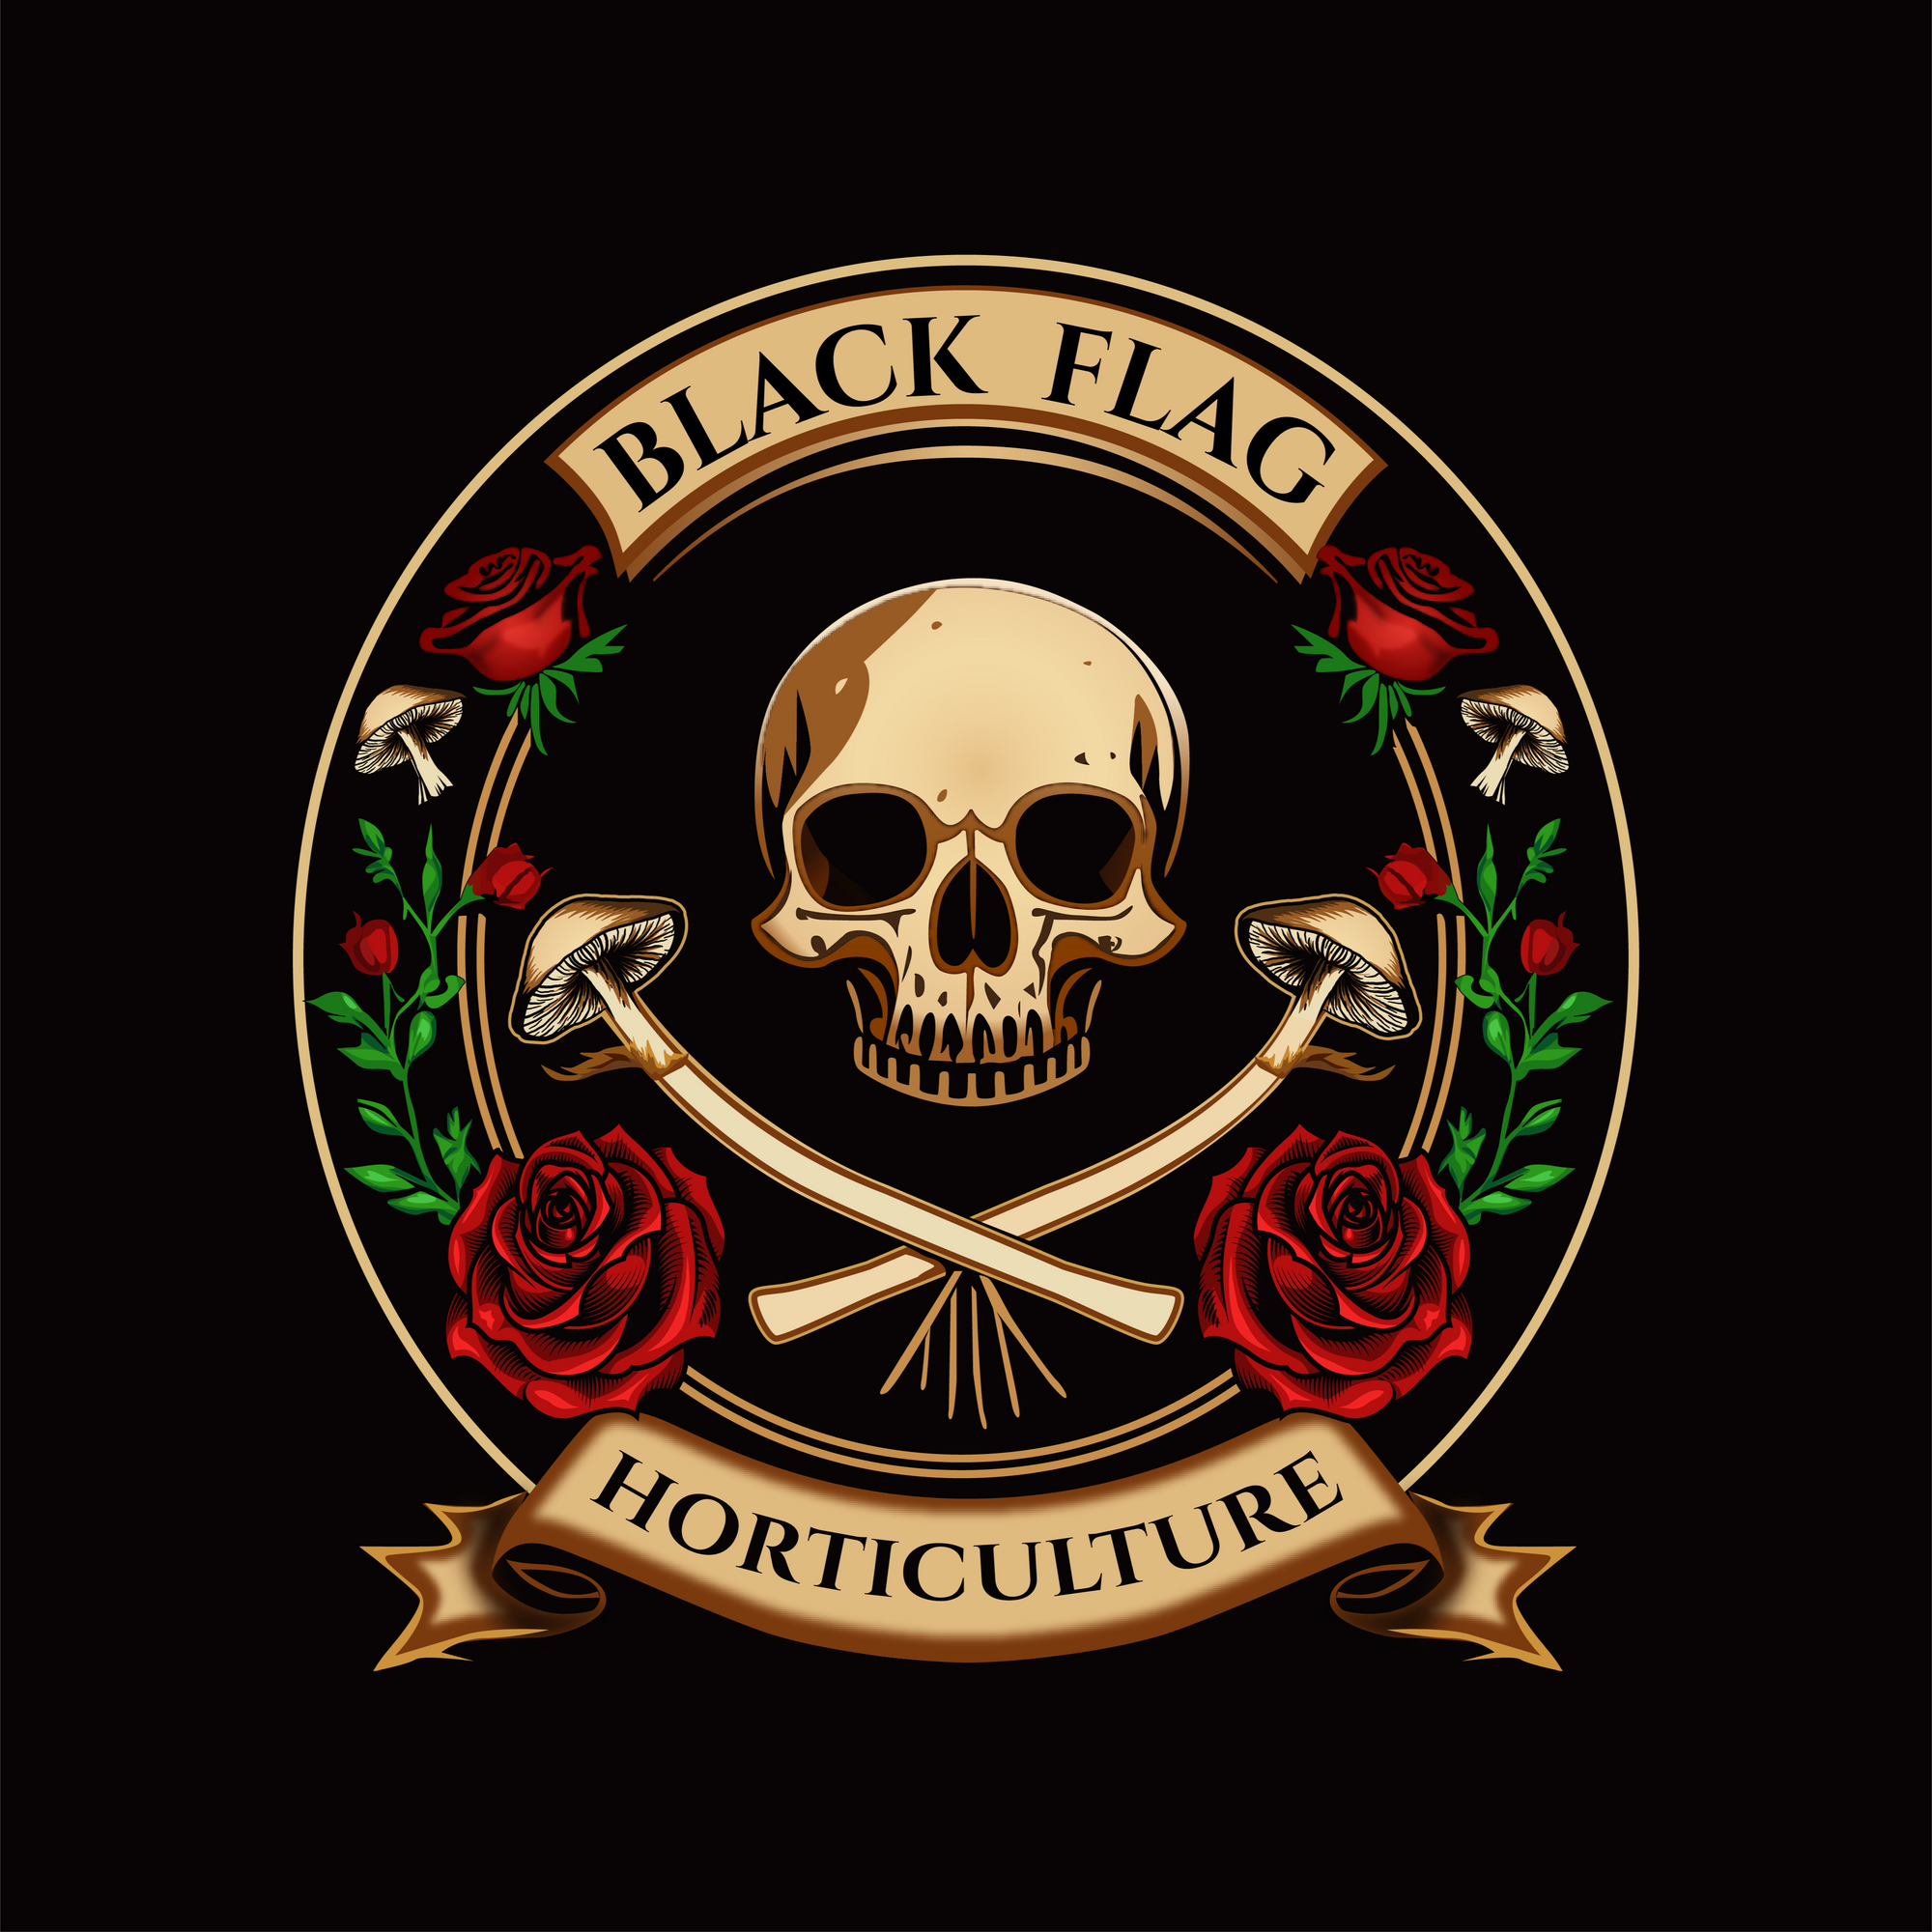 Images Black Flag Horticulture